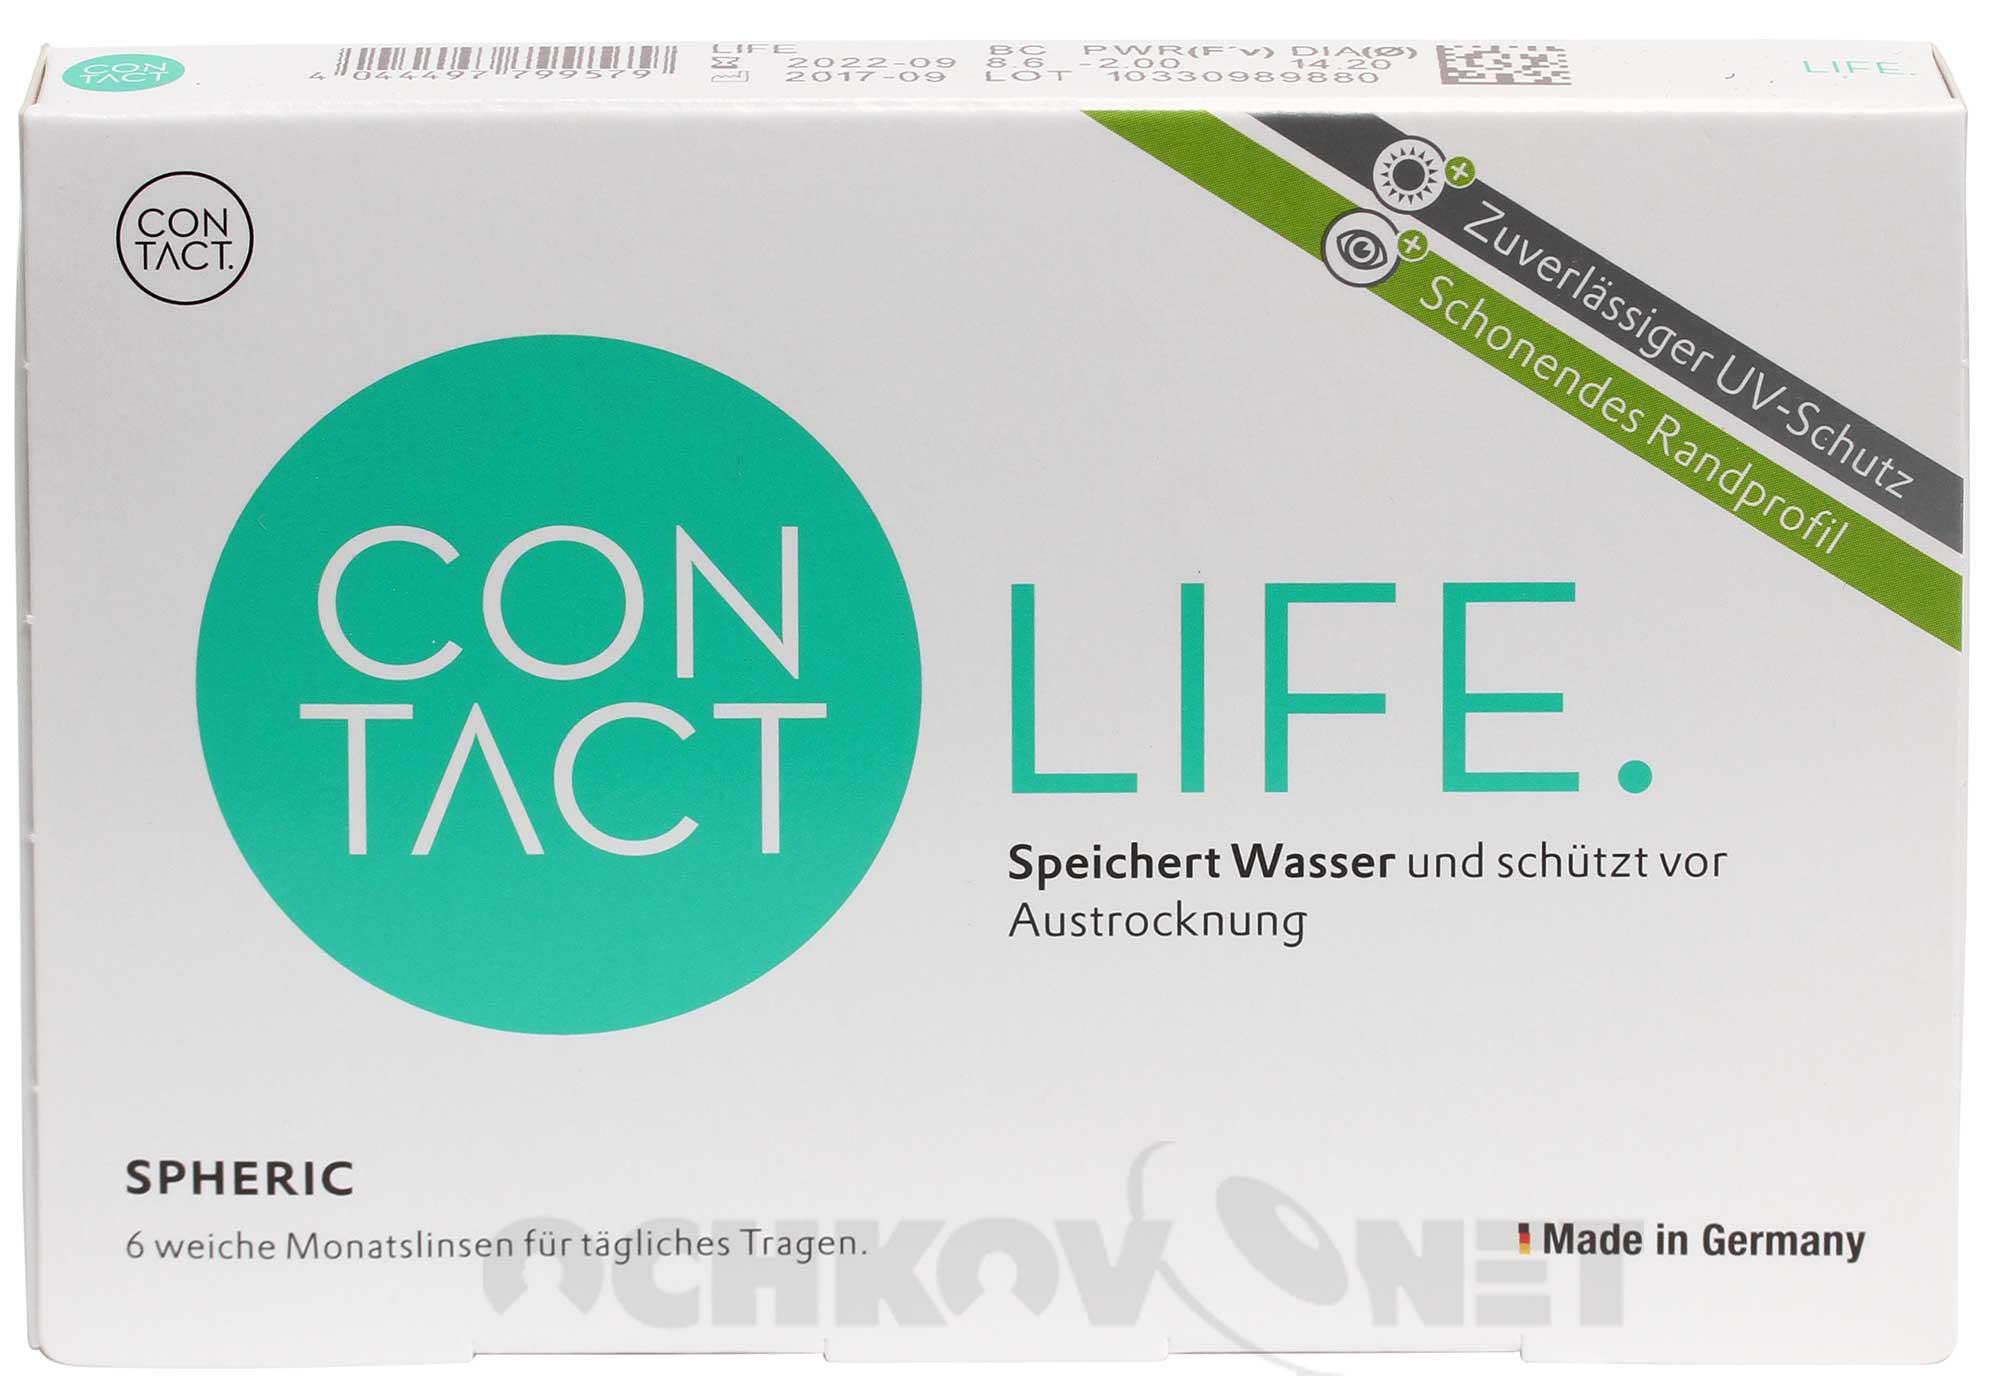 Купить Контактные линзы Contact Life spheric 6 линз (радиус 8.3, минус и плюс), Wöhlk